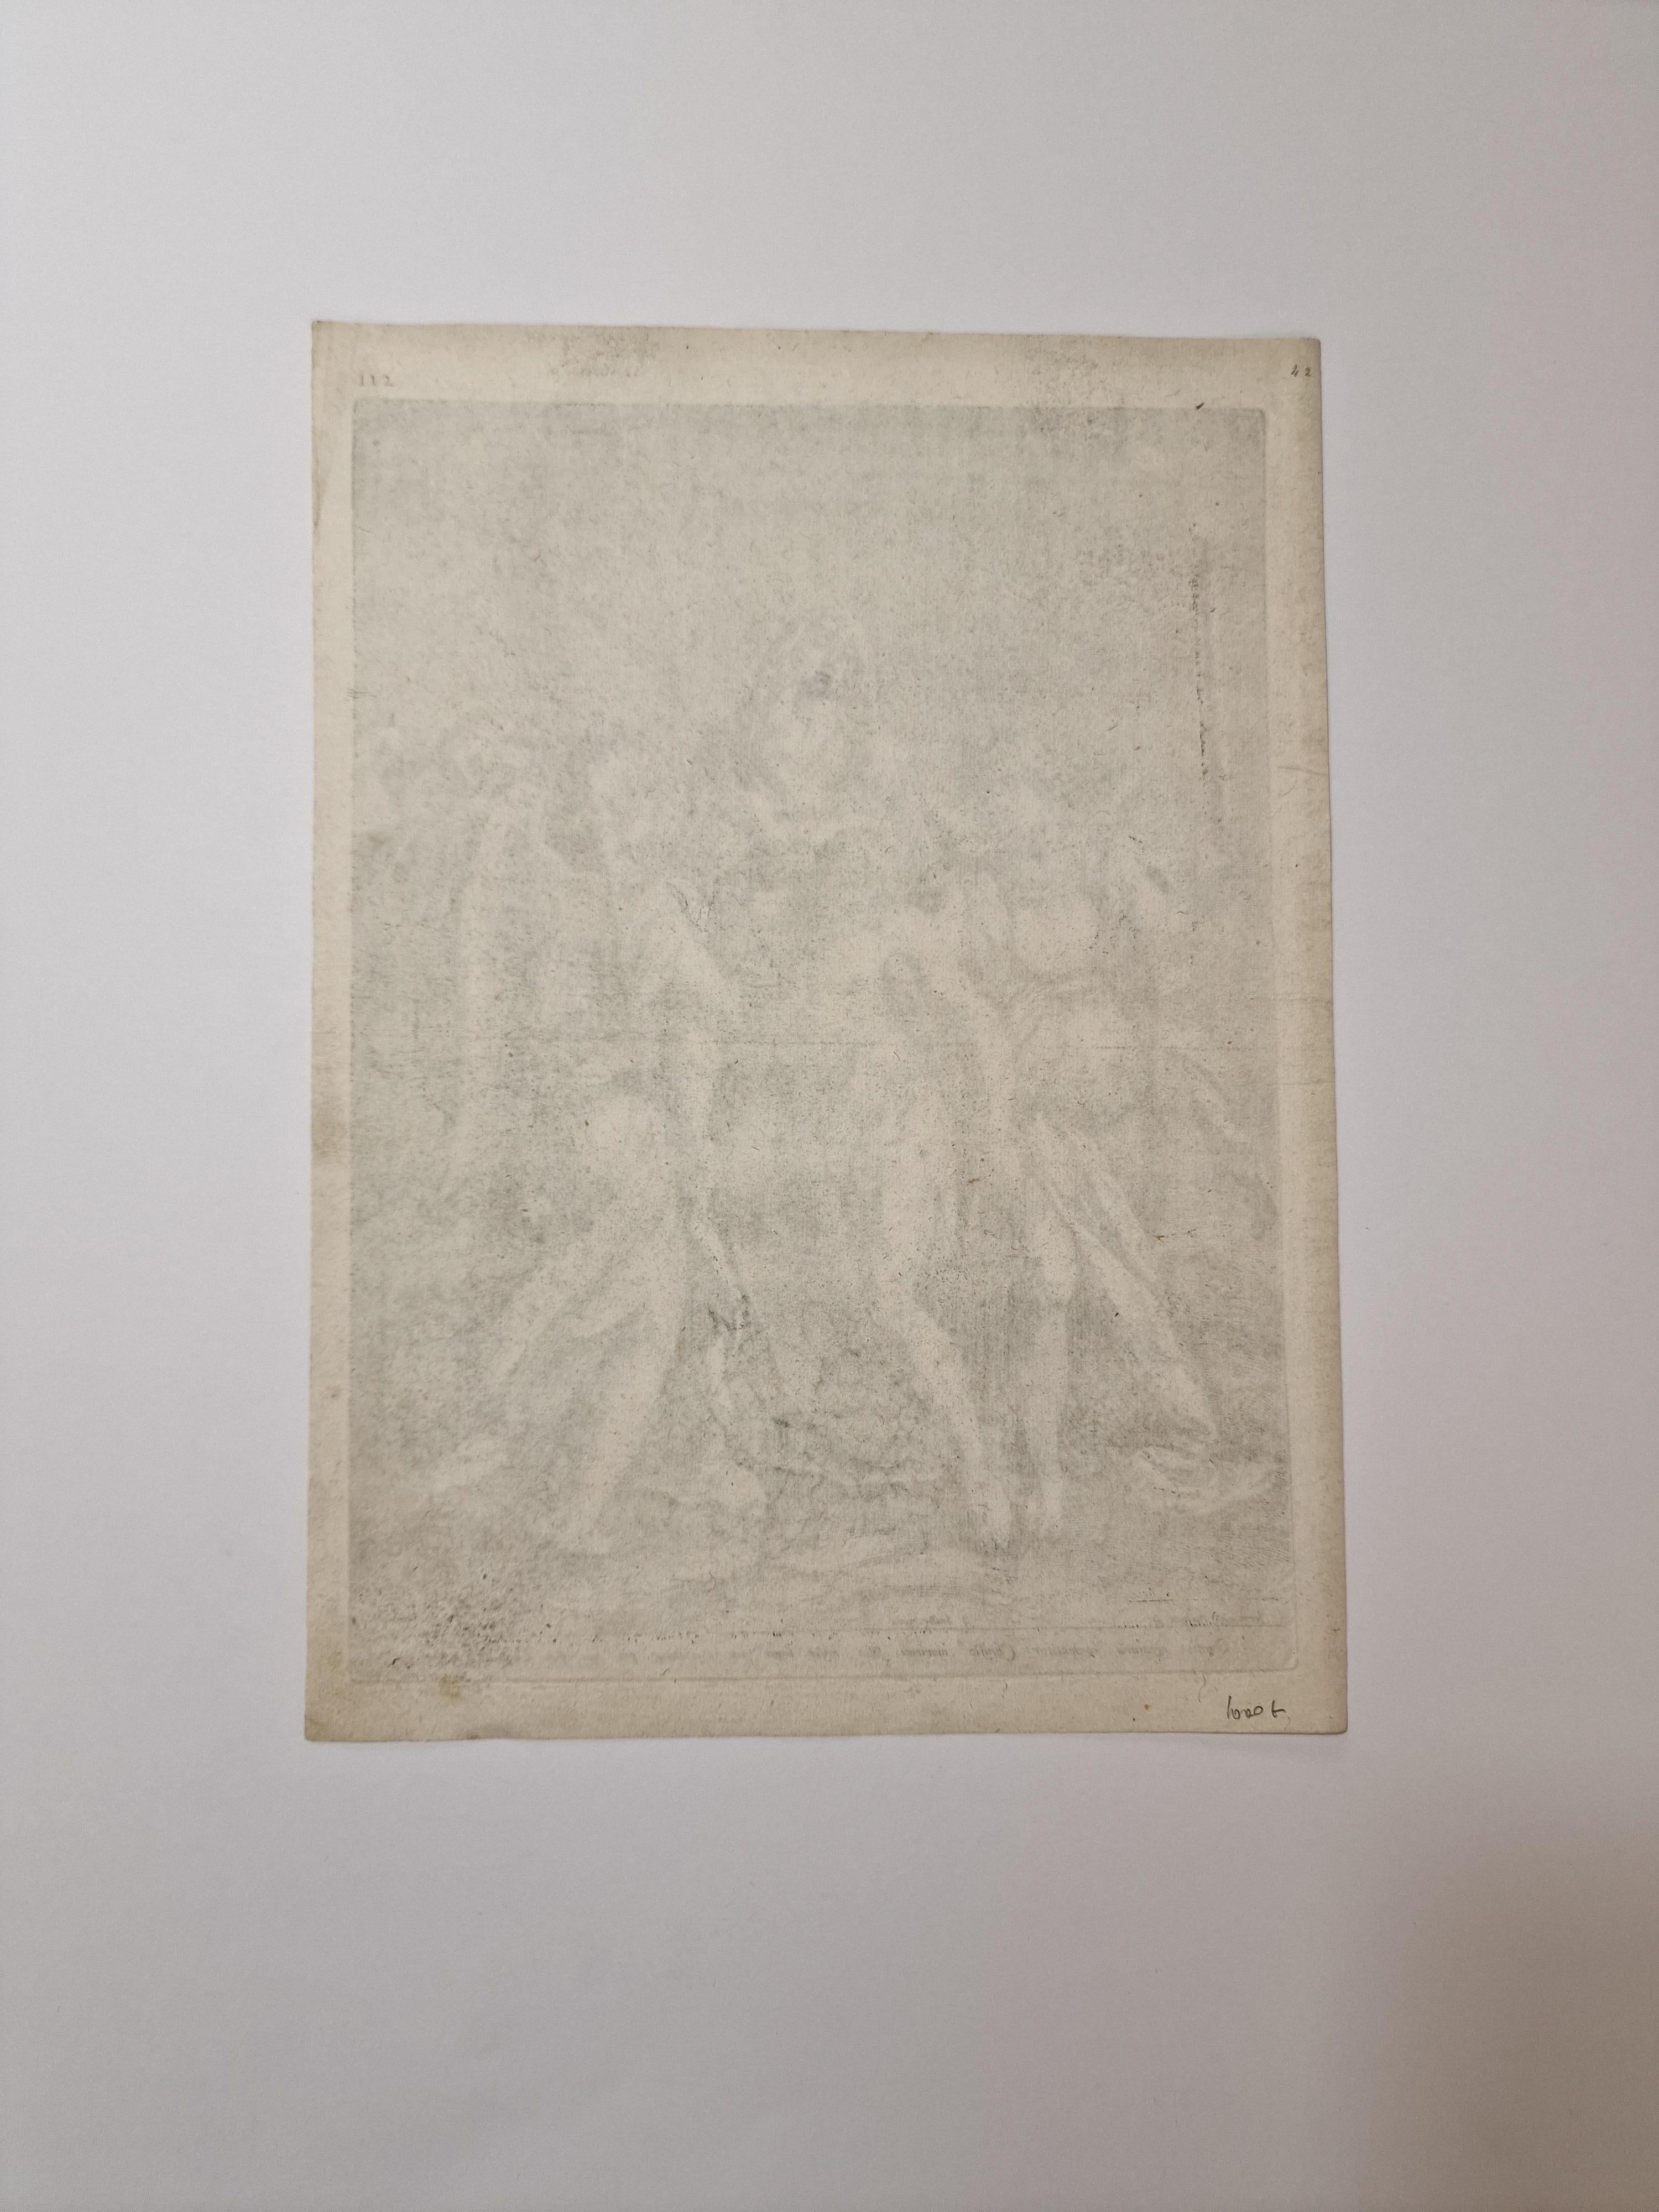 Piéta - Print by Hieronymus Wierix